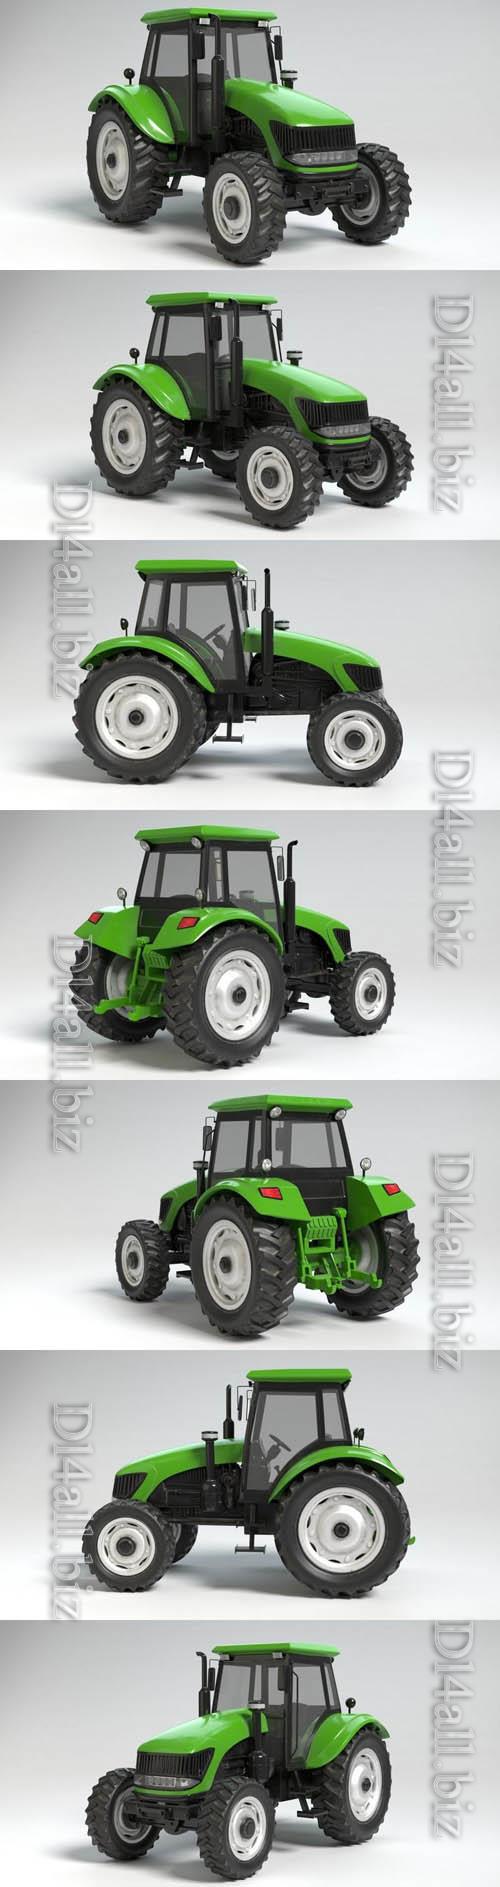 3d model of a farm tractor